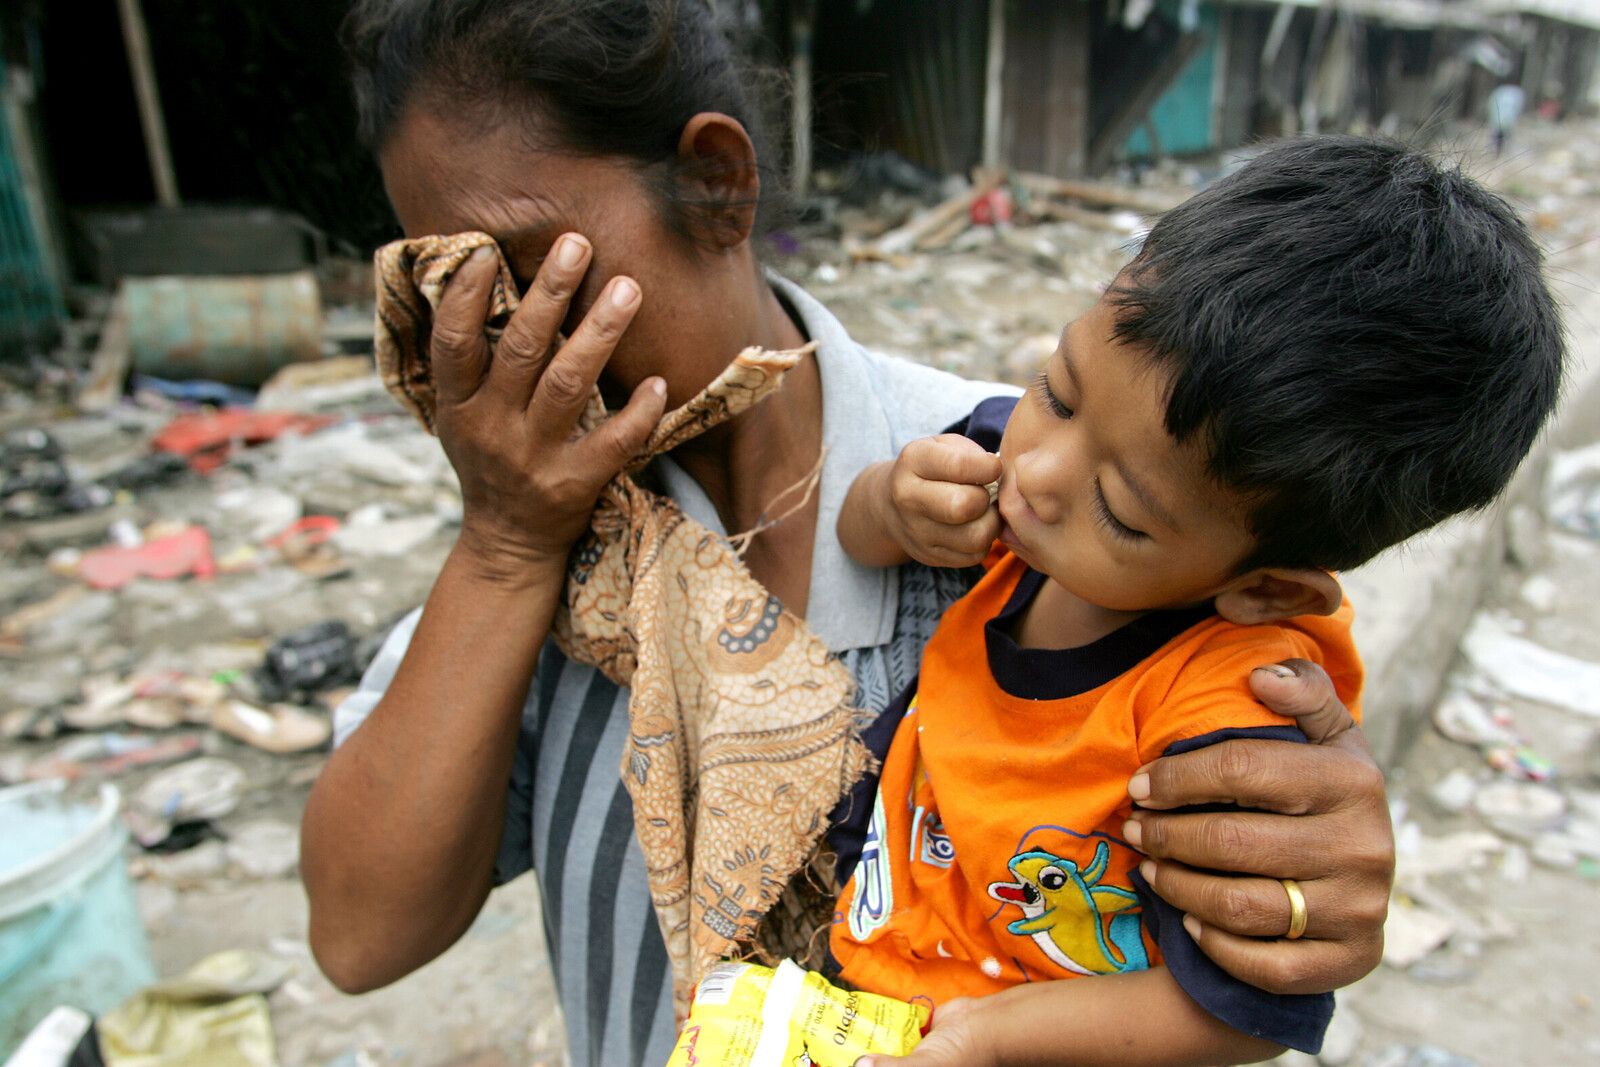 Tsunamis ereignen sich plötzlich und bringen Tod und Verwüstung. Eine Frau und ihr Kind stehen in den Trümmern, die einmal ihre Heimat waren.